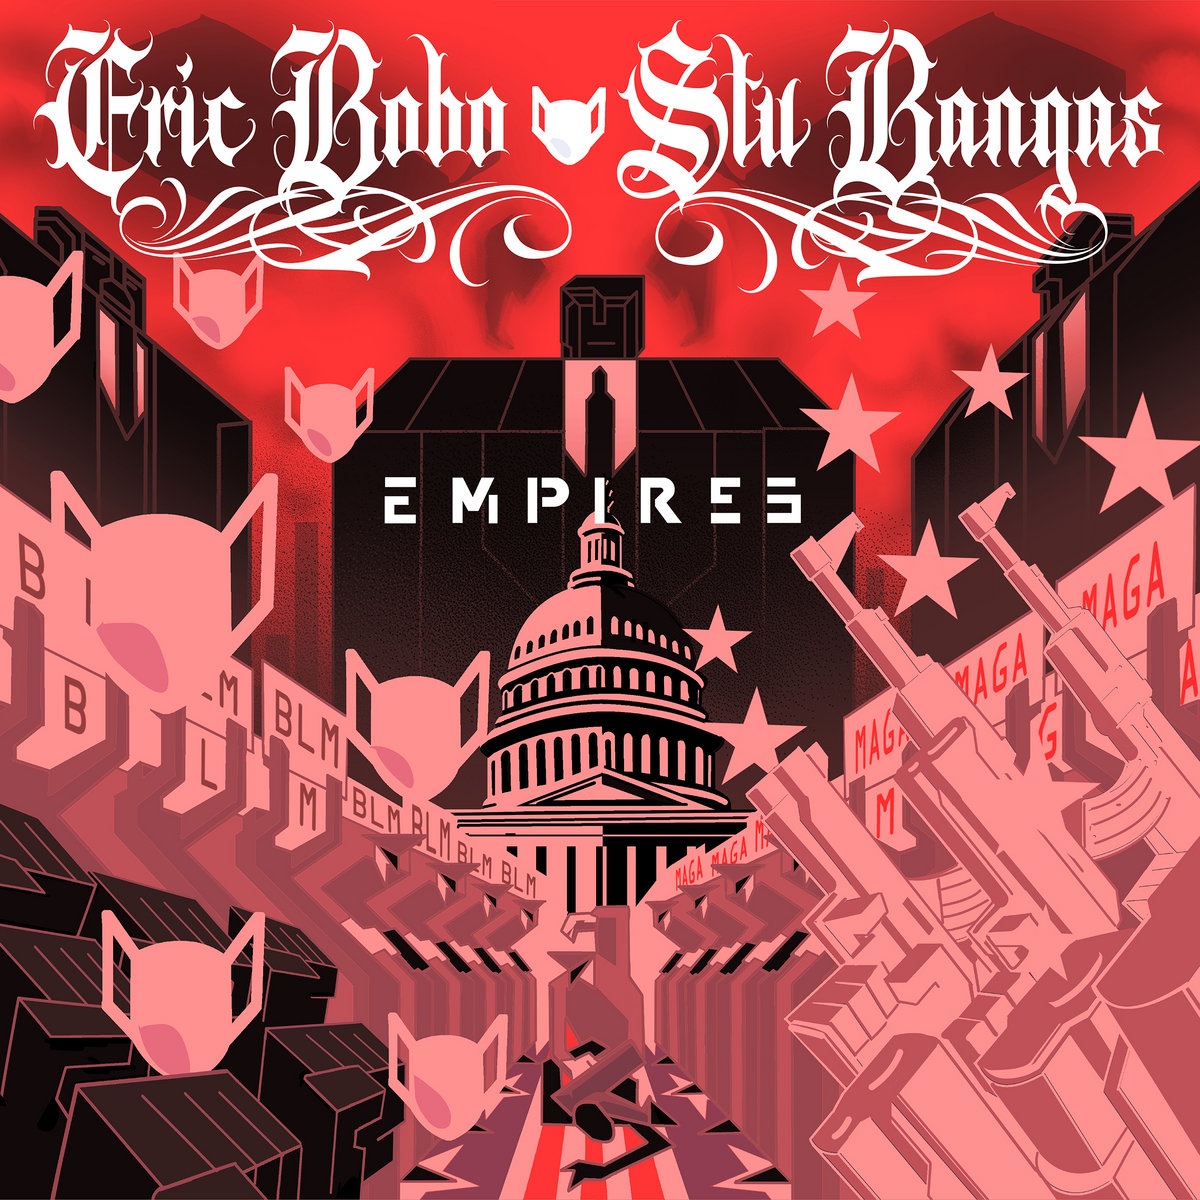 Empires_eric_bobo_stu_bangas